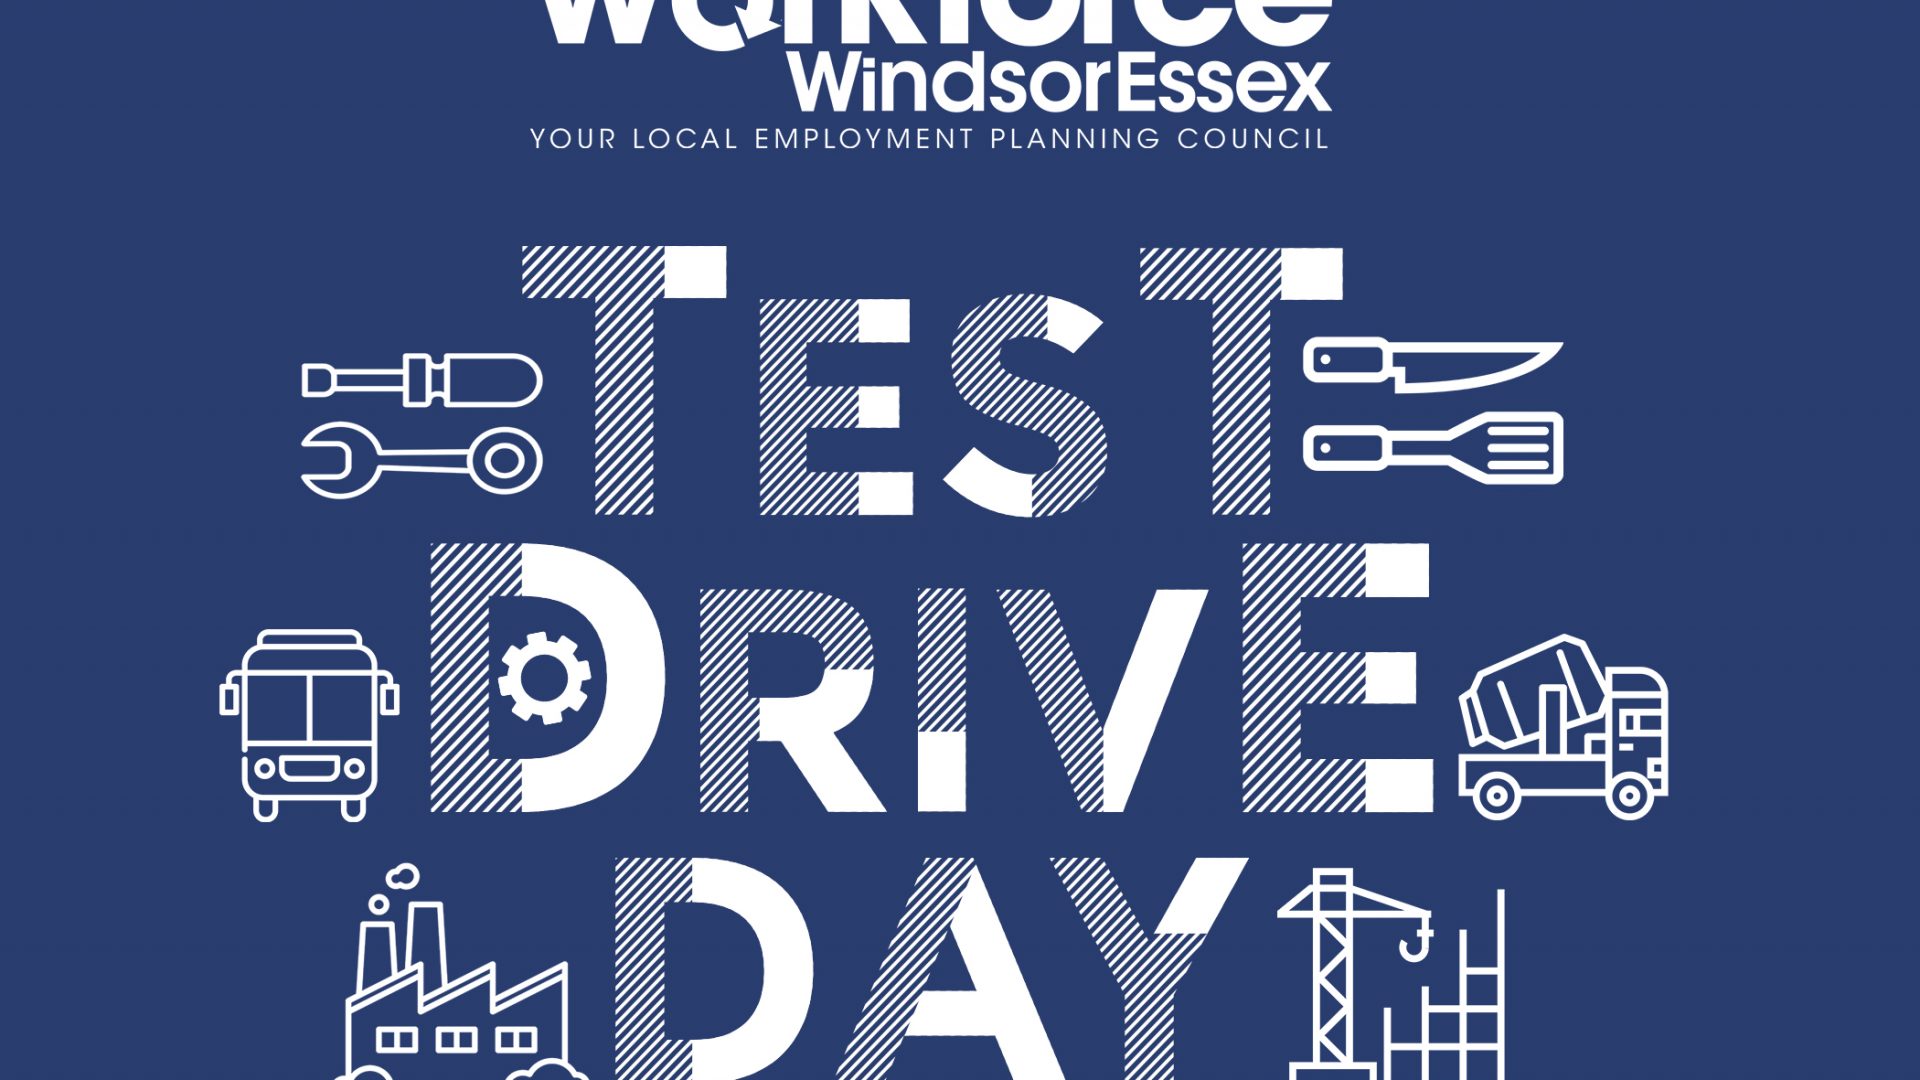 Workforce WindsorEssex Test Drive Day